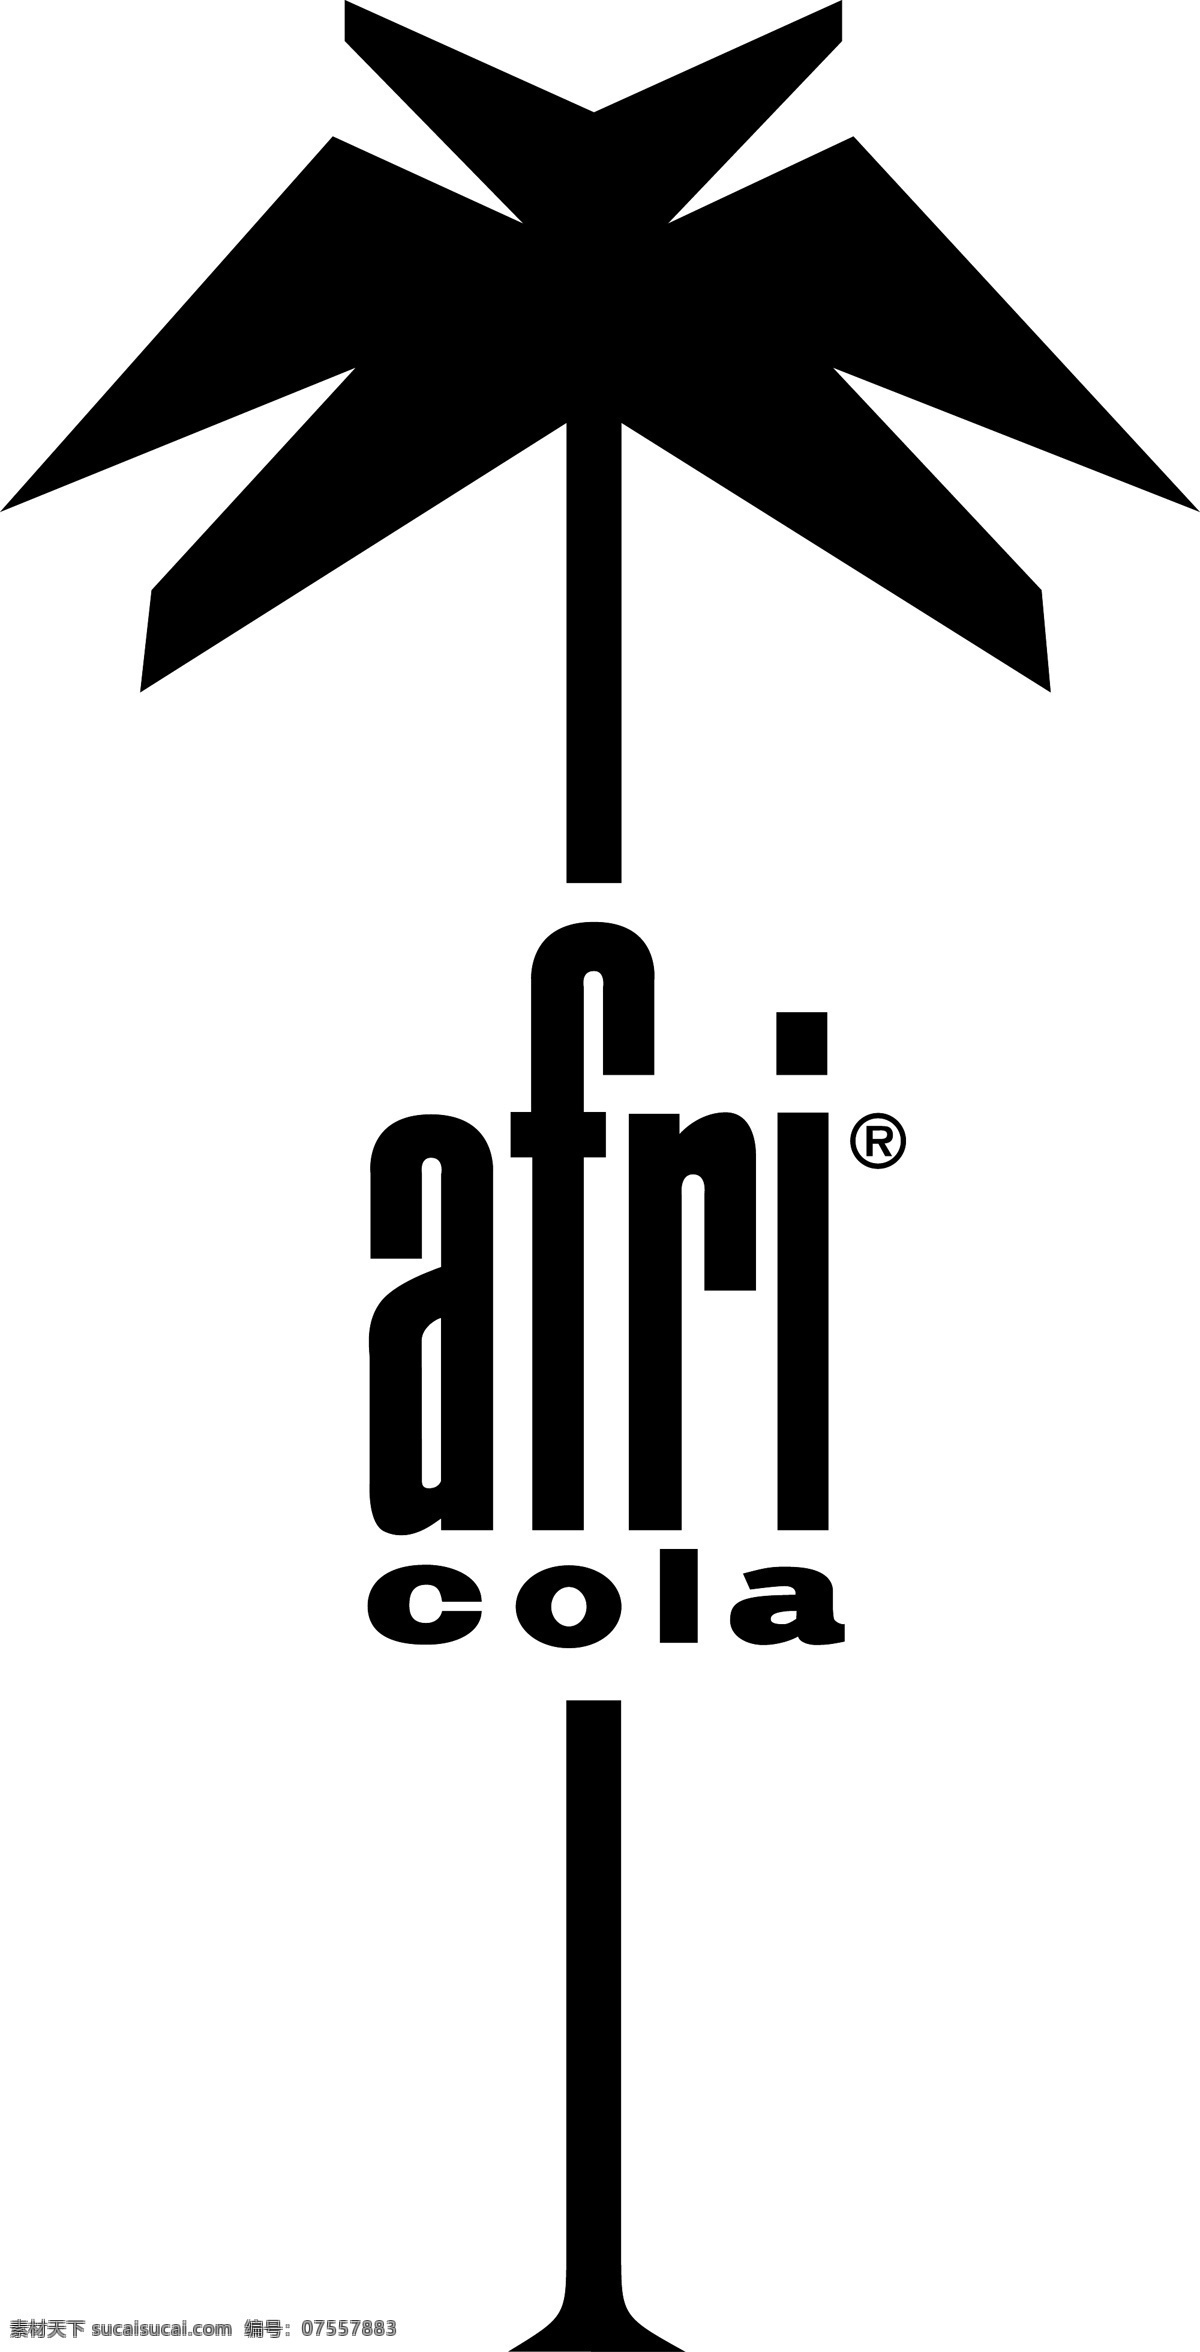 该可乐标志 标志 非洲 可口可乐标志 可乐 非洲可乐 可乐的商标 矢量 向量 可口可乐 logo 图像 艺术 标识 建筑家居